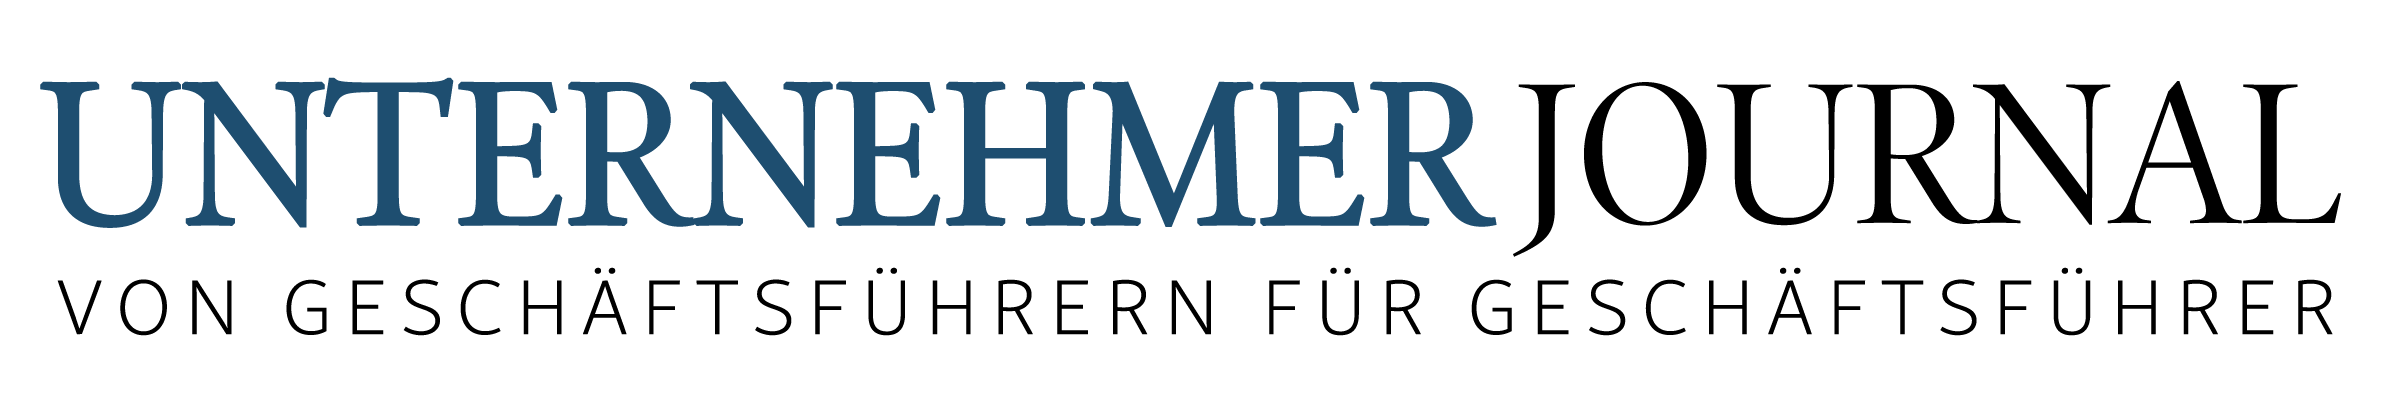 Unternehmerjournal Logo